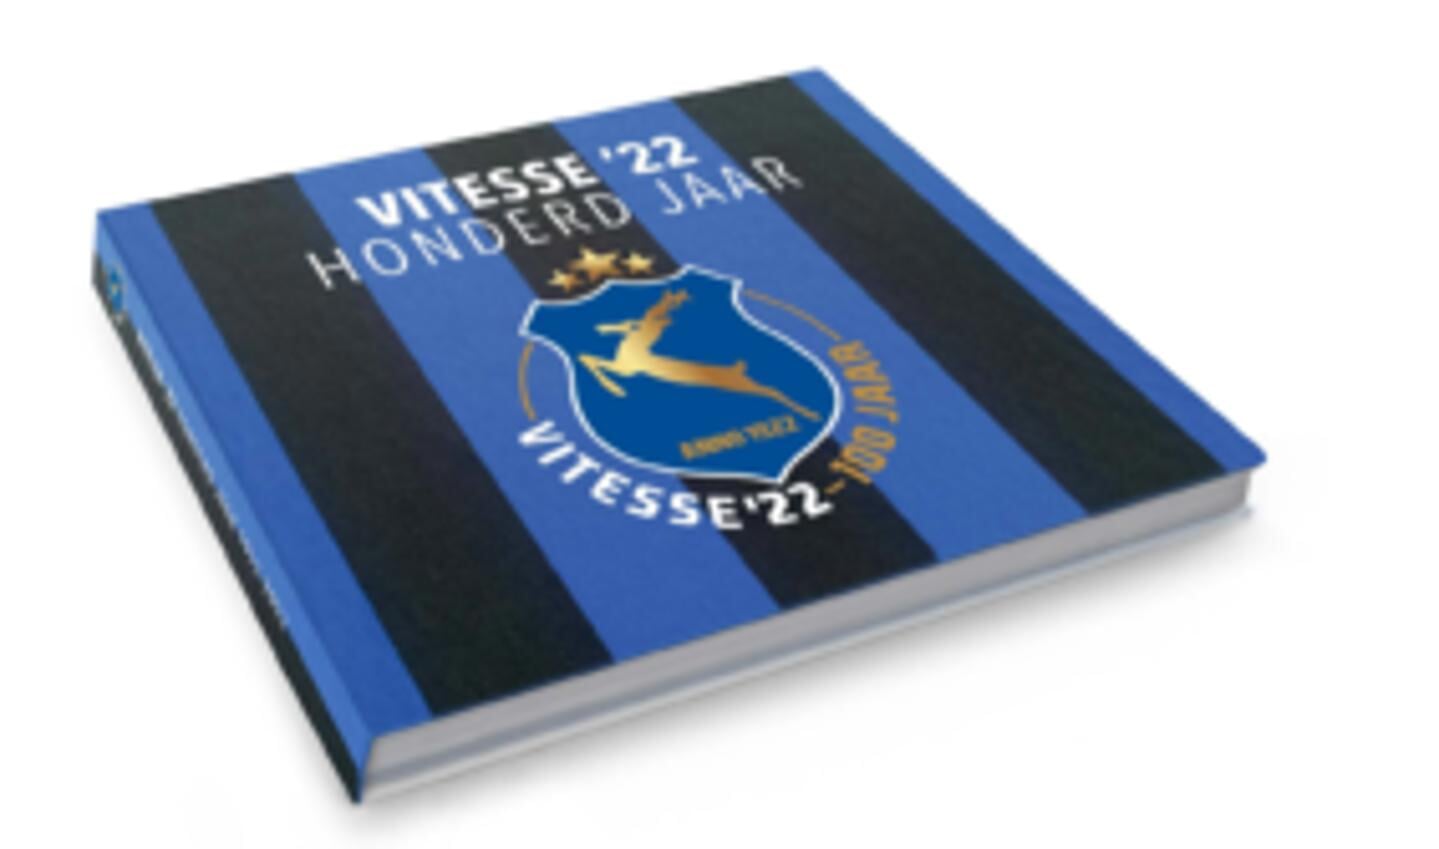 Jubileumboek Vitesse '22 honderd jaar.